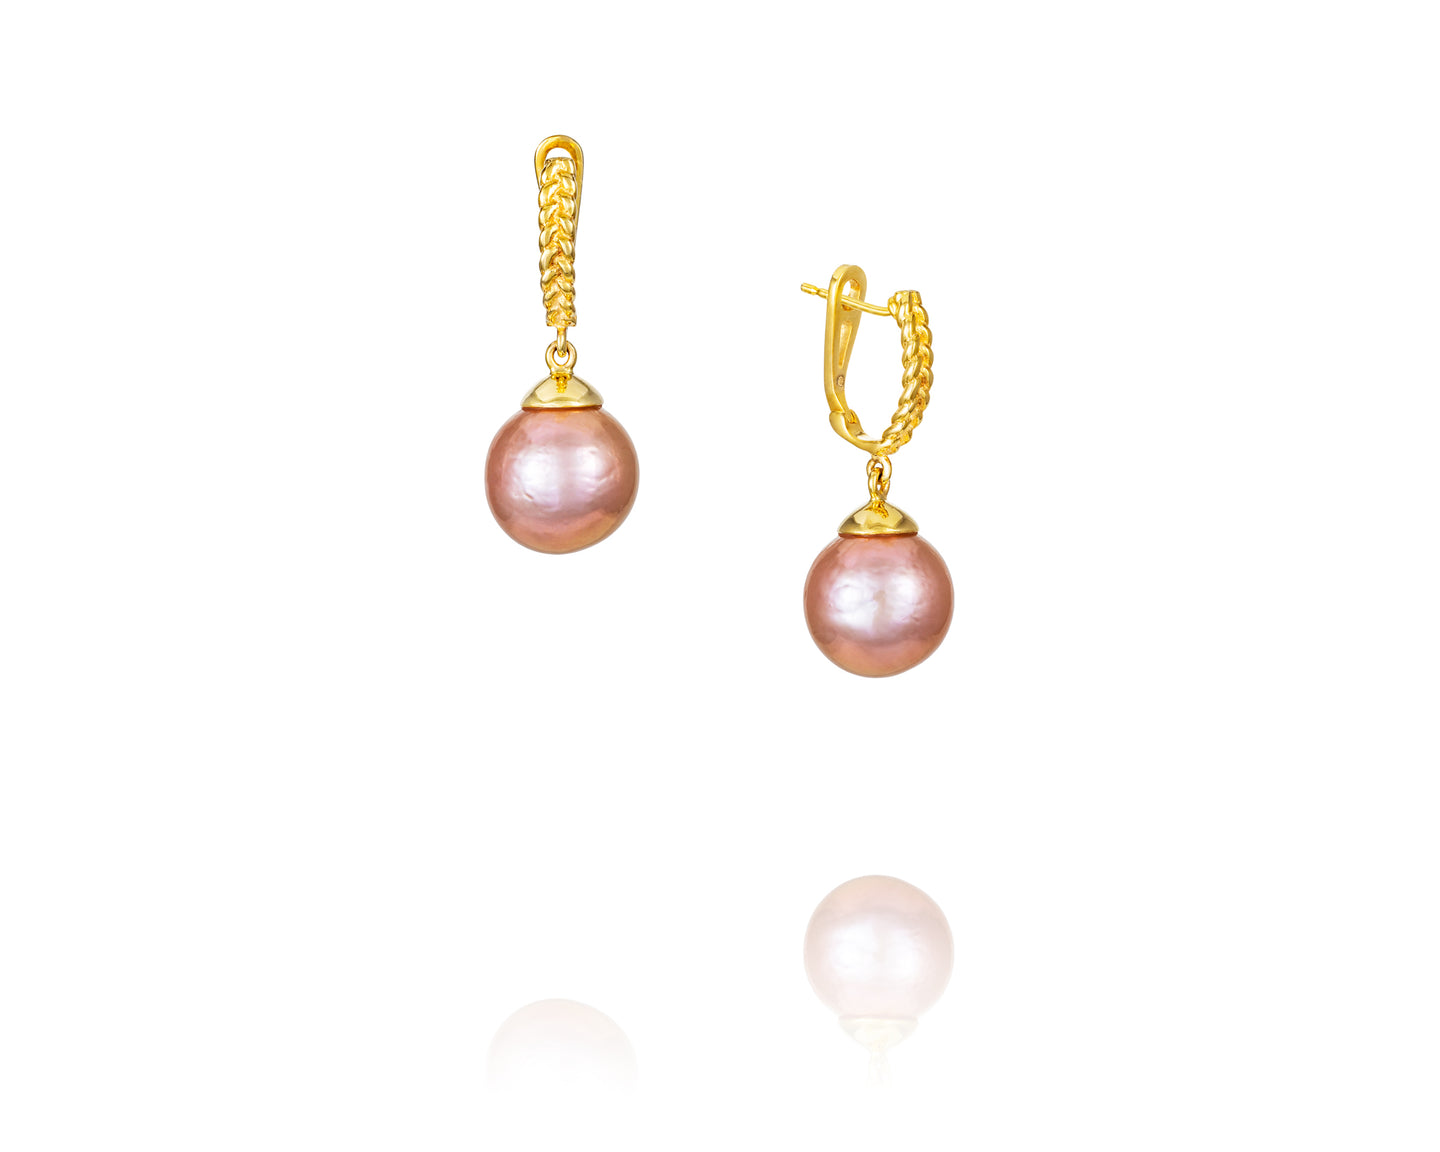 Pink Gold Drop Earrings